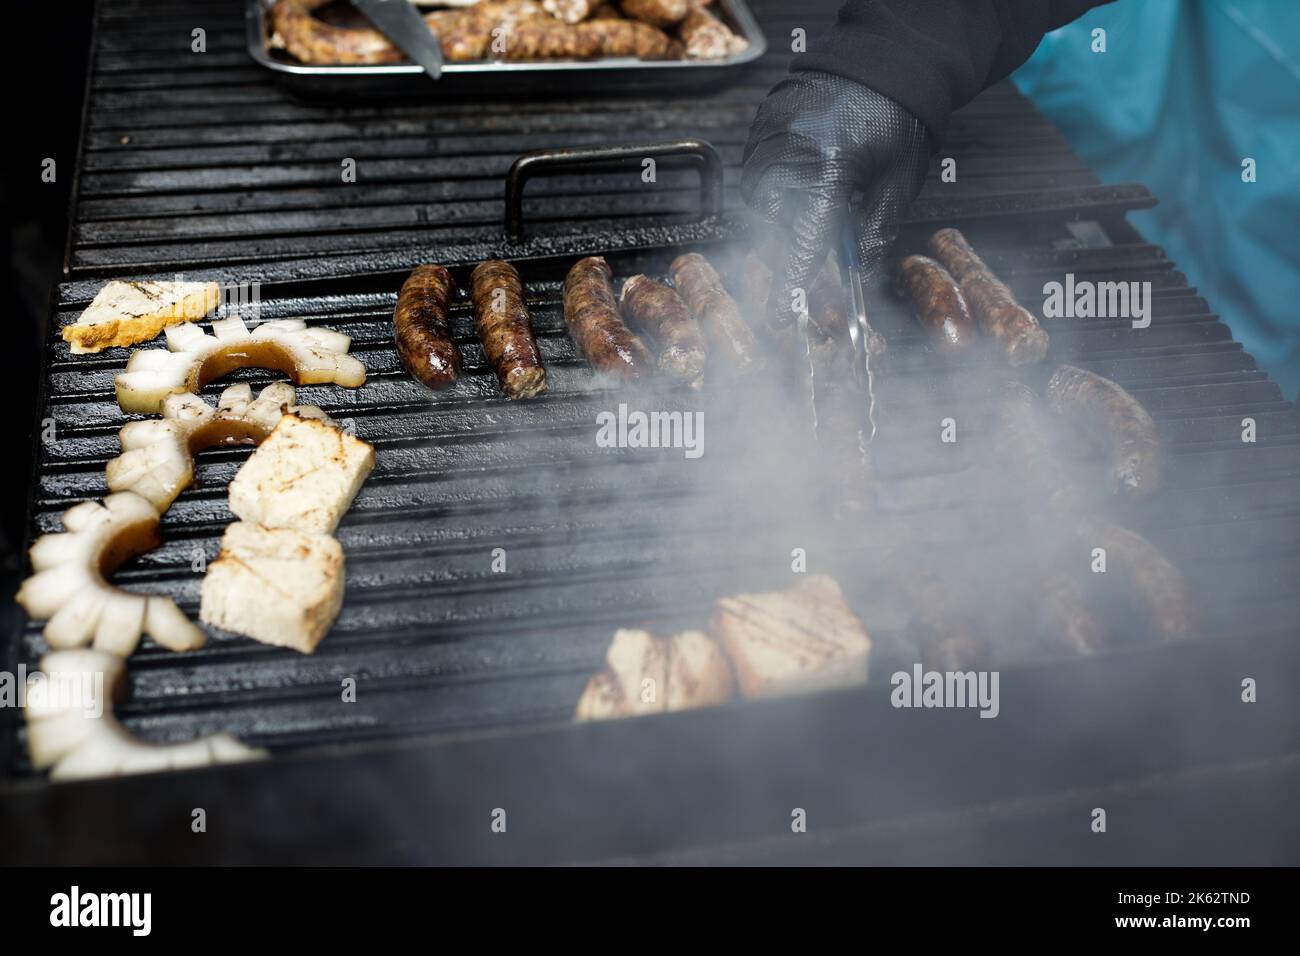 Détails de faible profondeur de champ (mise au point sélective) avec des saucisses de porc cuisant sur un barbecue, sur un marché agricole européen. Banque D'Images